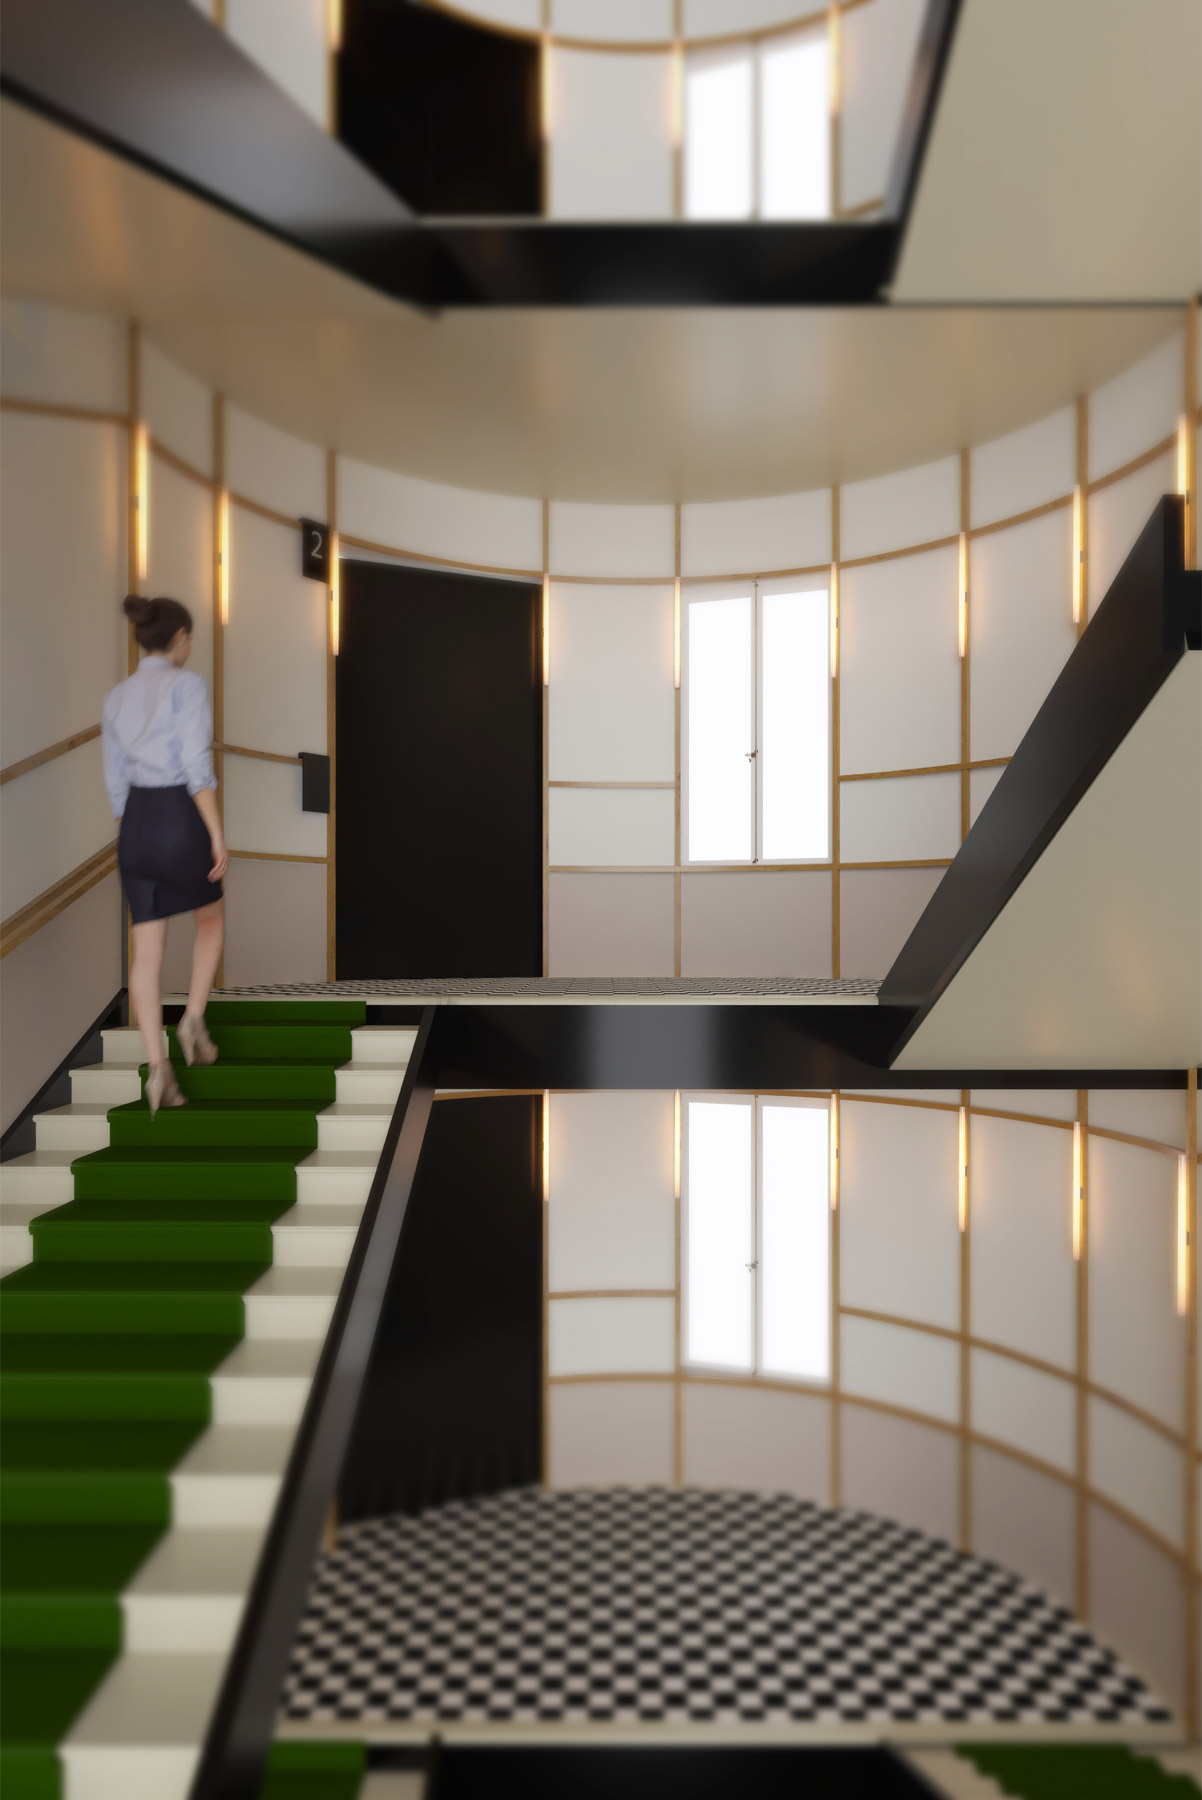 Palier immeuble de bureaux style bon marché avec carrelage damier, chemin d'escalier vert. Inspiré par Andrée Putman